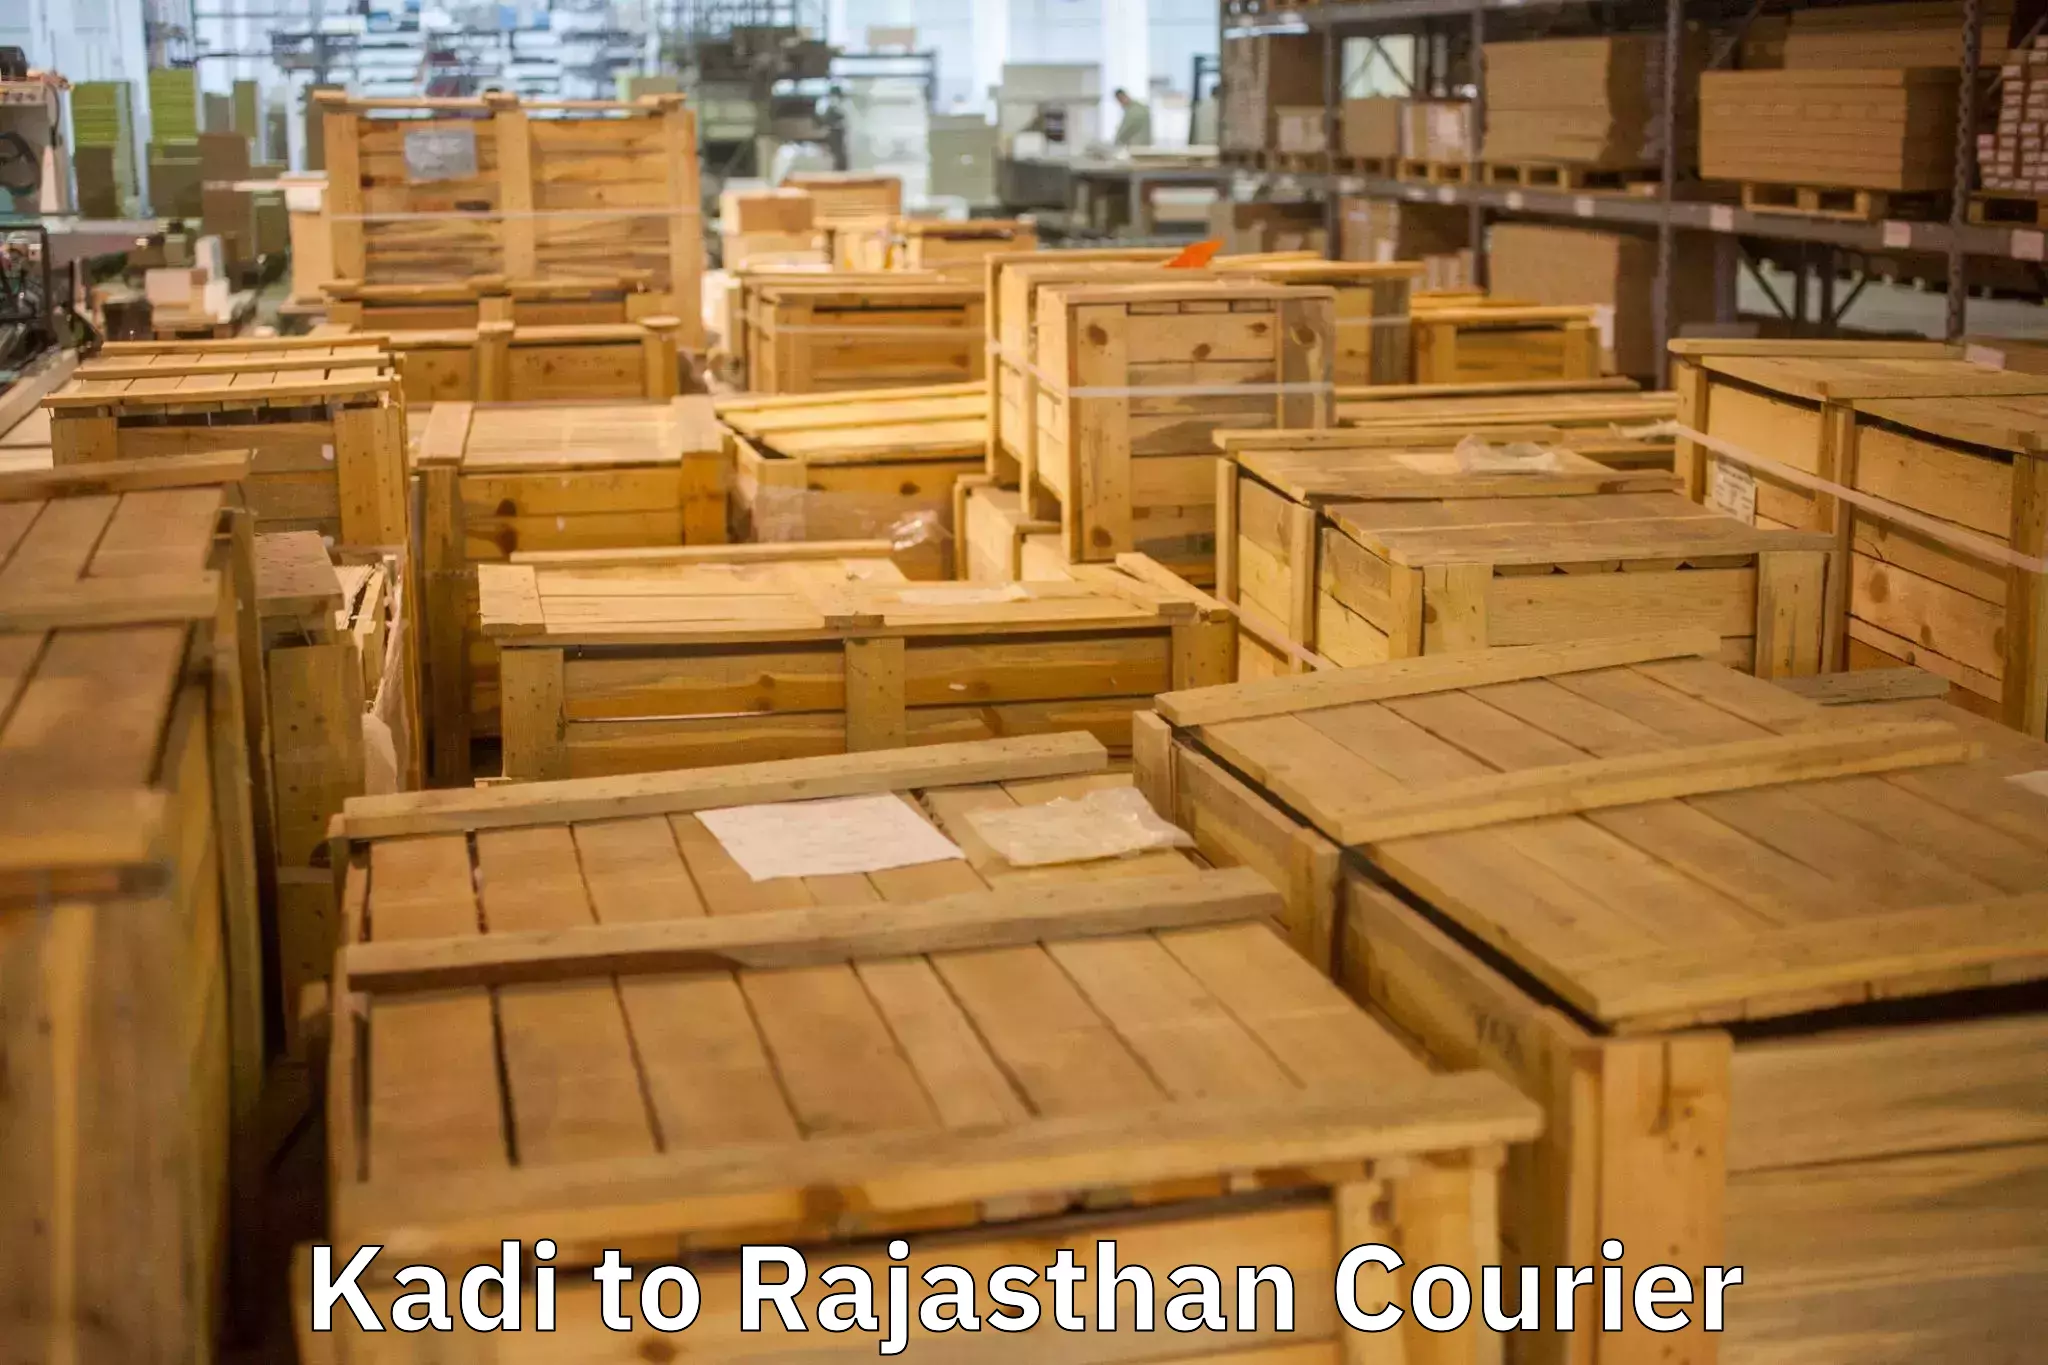 Furniture transport services Kadi to Khinwara